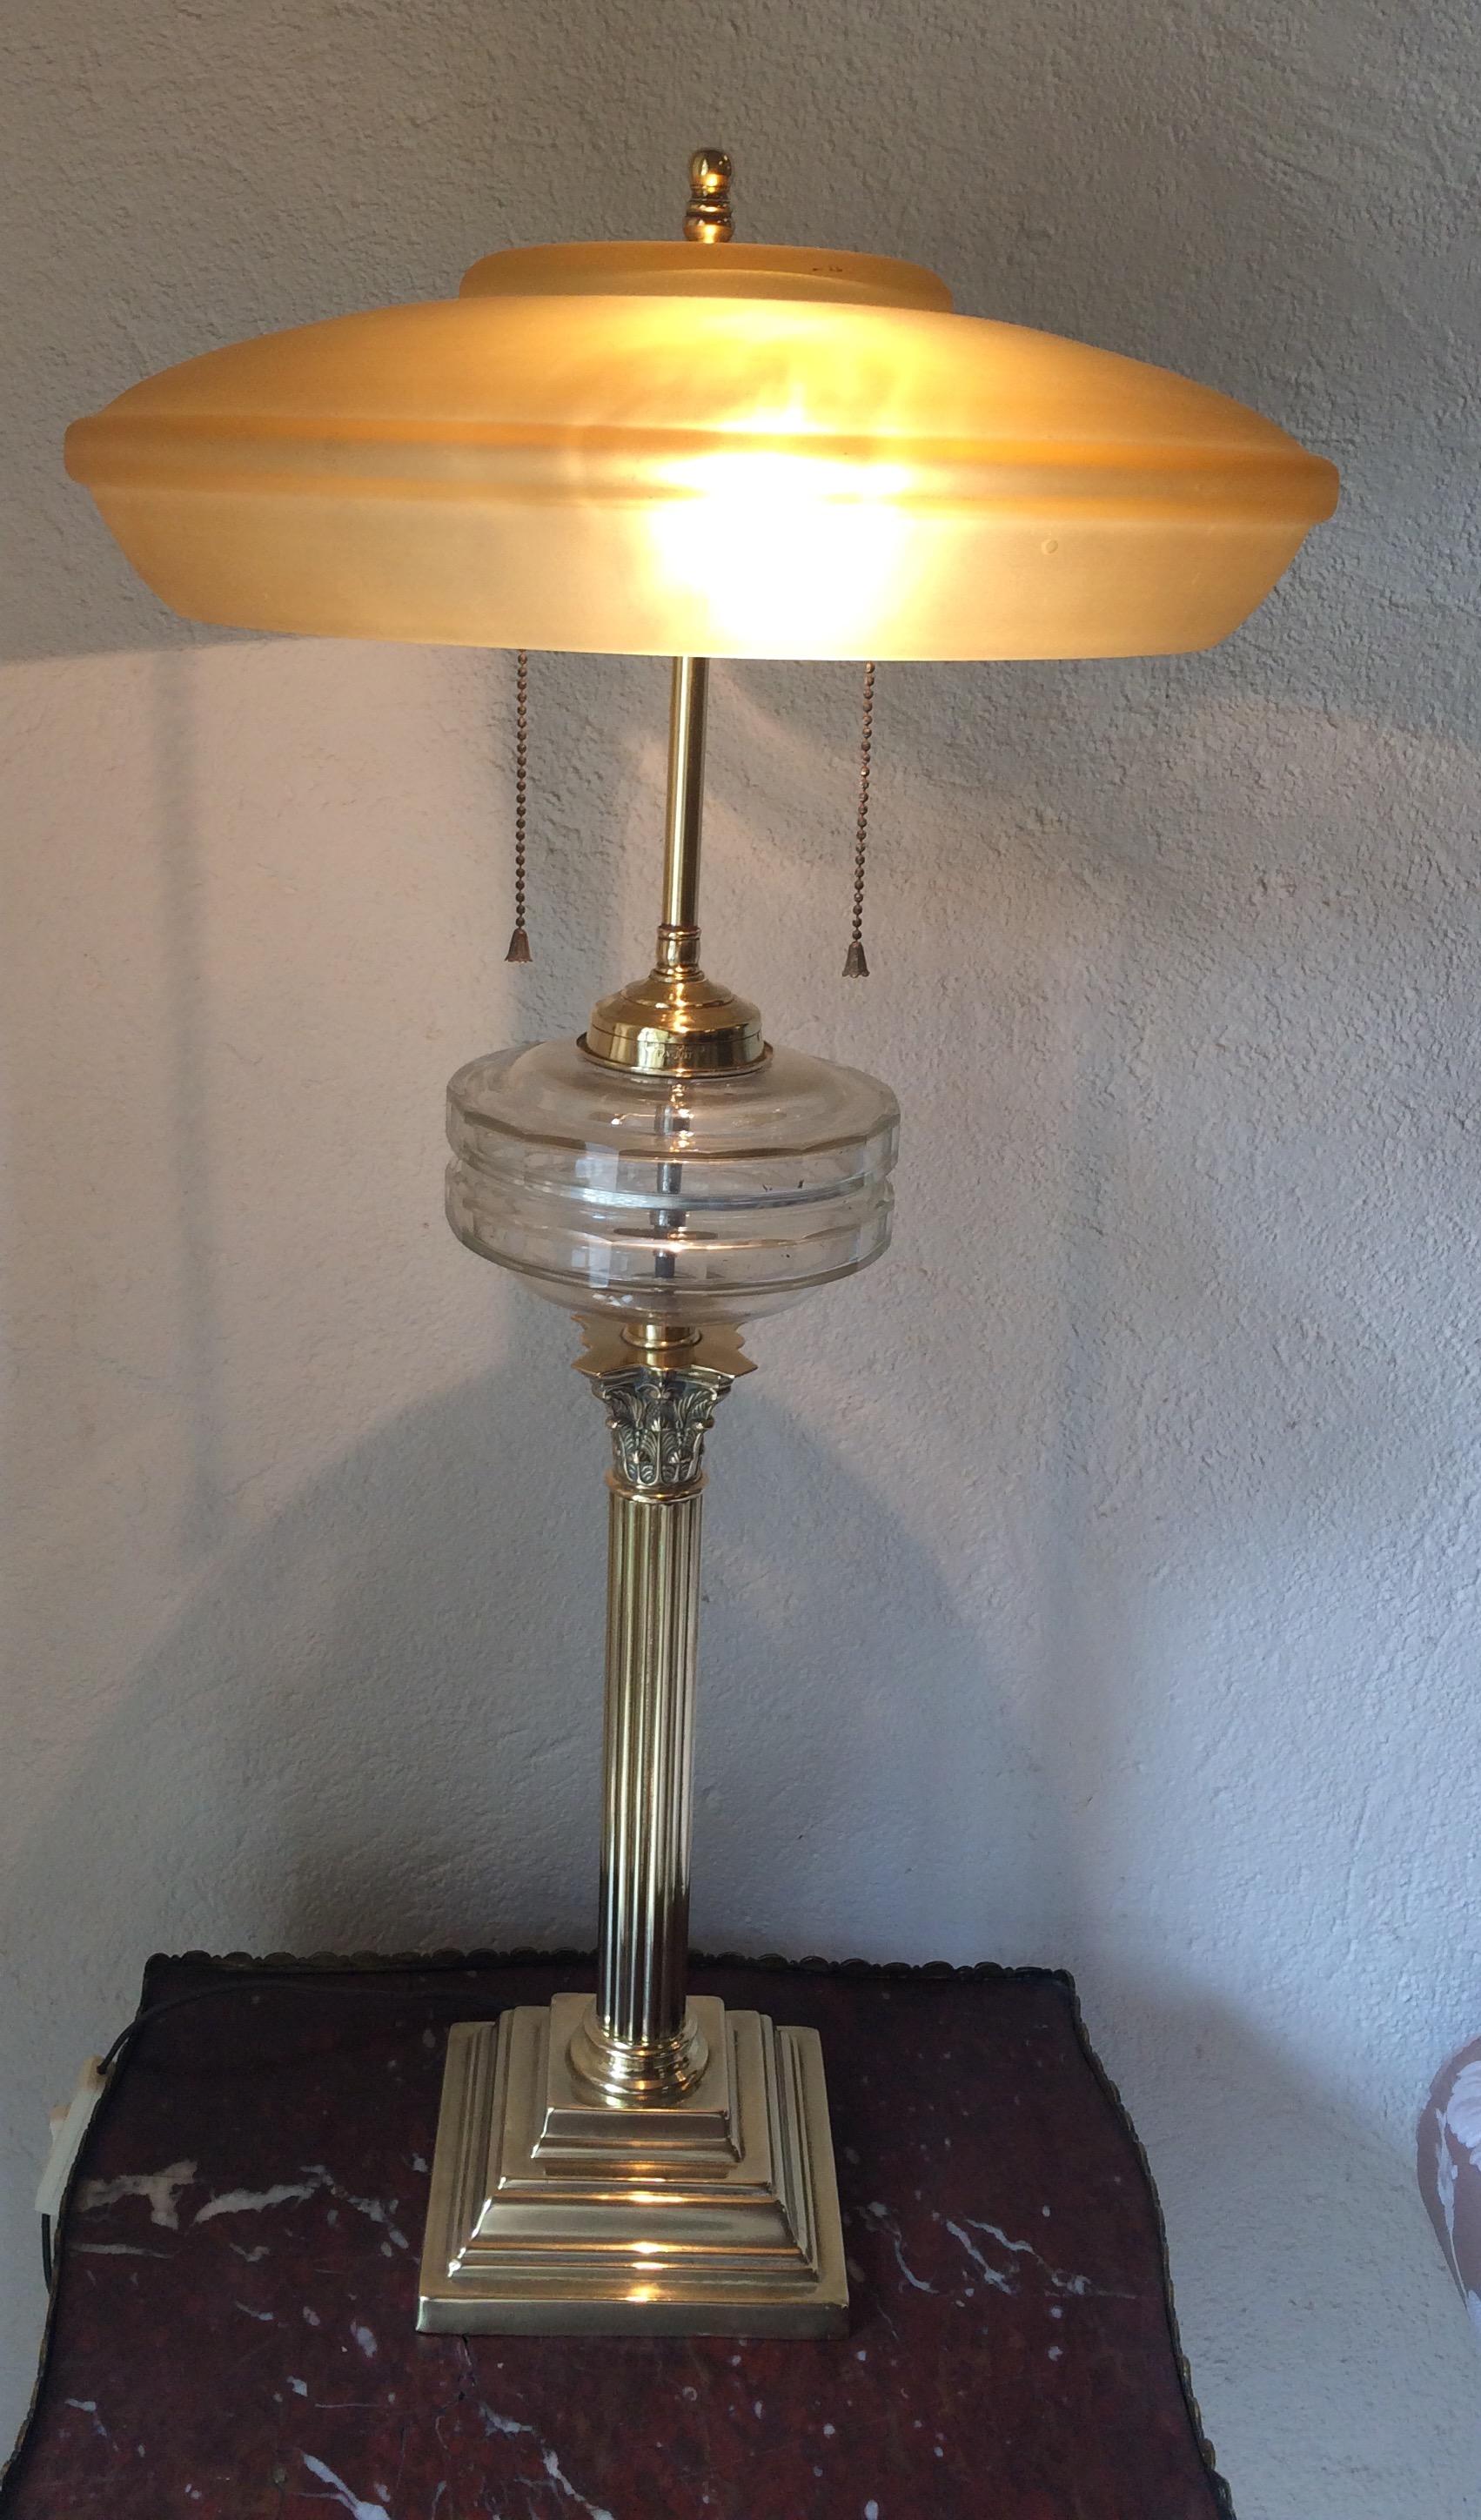 Lampe de table à colonne corinthienne en laiton et verre taillé, brevet Messenger, anciennement lampe à huile, aujourd'hui convertie à l'électricité, vers 1880. Conçu par Samuel S Messenger & Sons de Birmingham.

Cette lampe très décorative est en